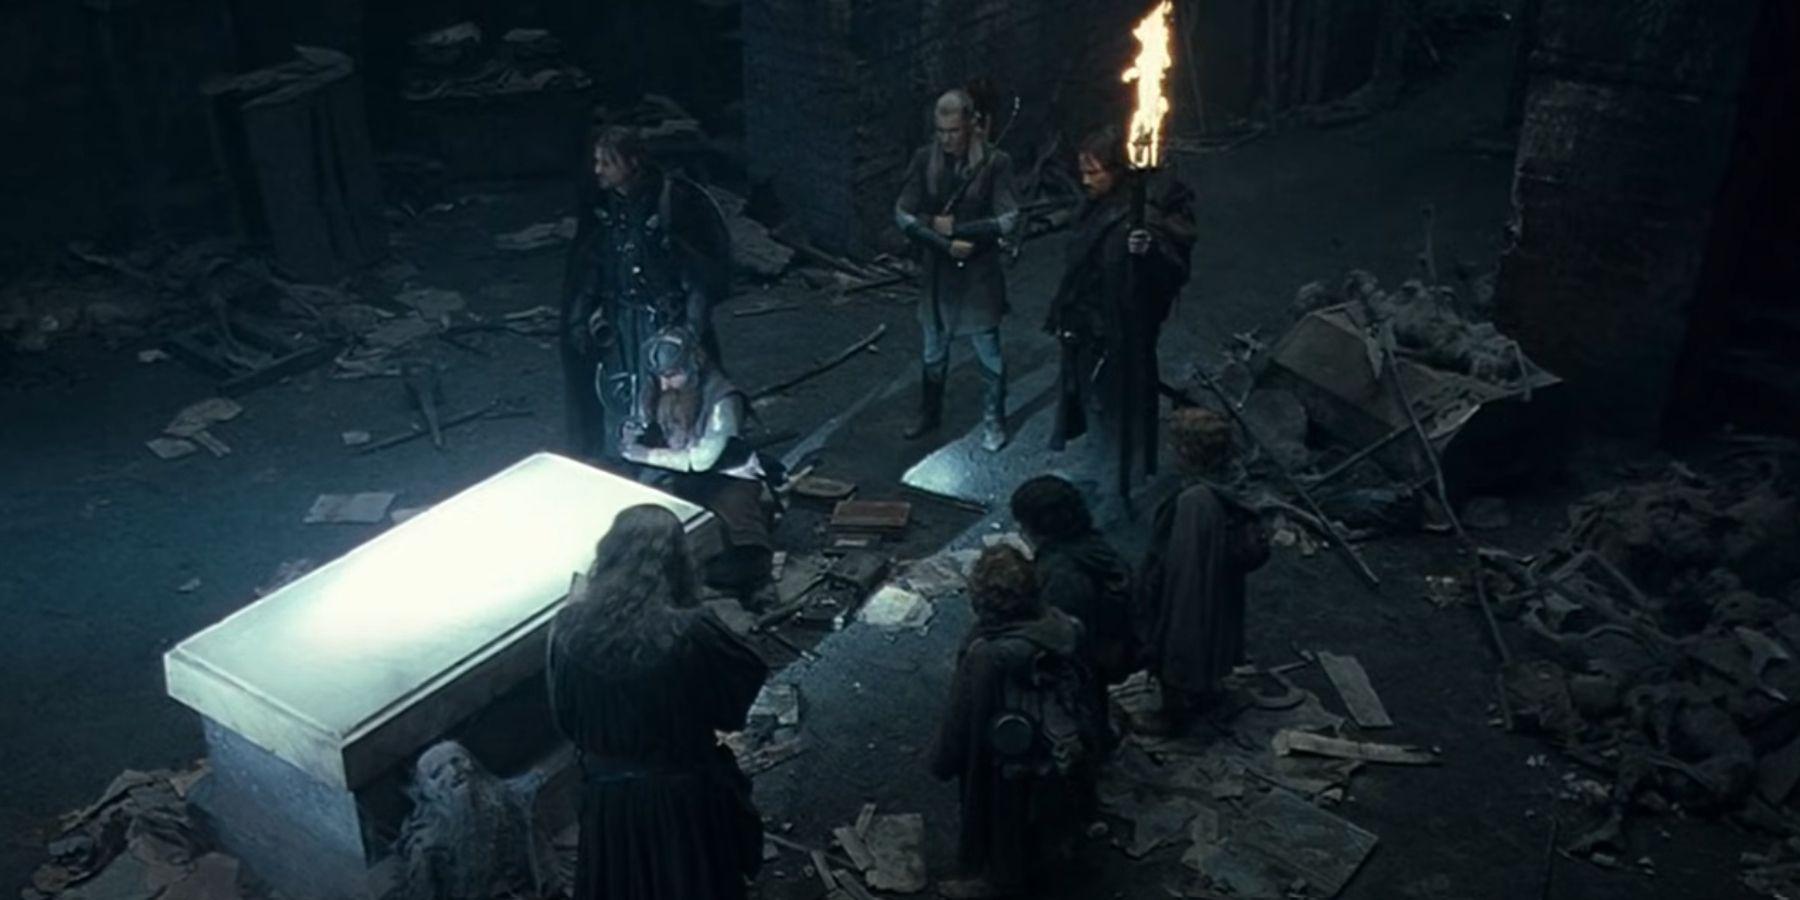 LOTR: Boromir era na verdade o membro mais compassivo da Irmandade